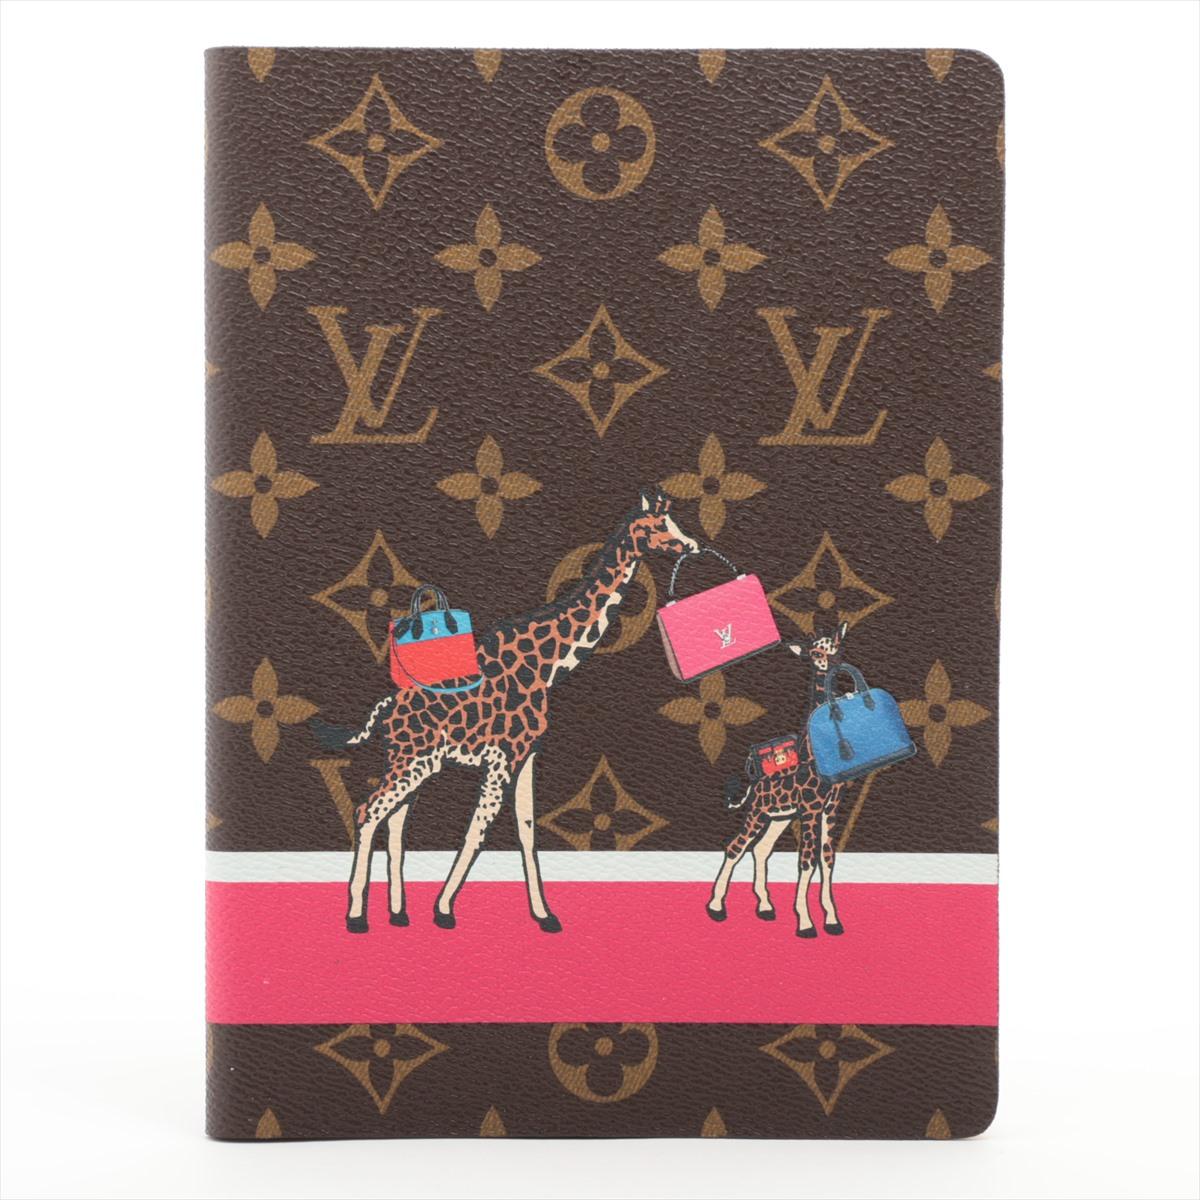 Das Louis Vuitton Monogram Giraffe Clemence Notizbuch in Braun ist ein schickes und anspruchsvolles Schreibwaren-Accessoire, das Luxus und unverwechselbares Design nahtlos miteinander verbindet. Das mit viel Liebe zum Detail gefertigte Notizbuch